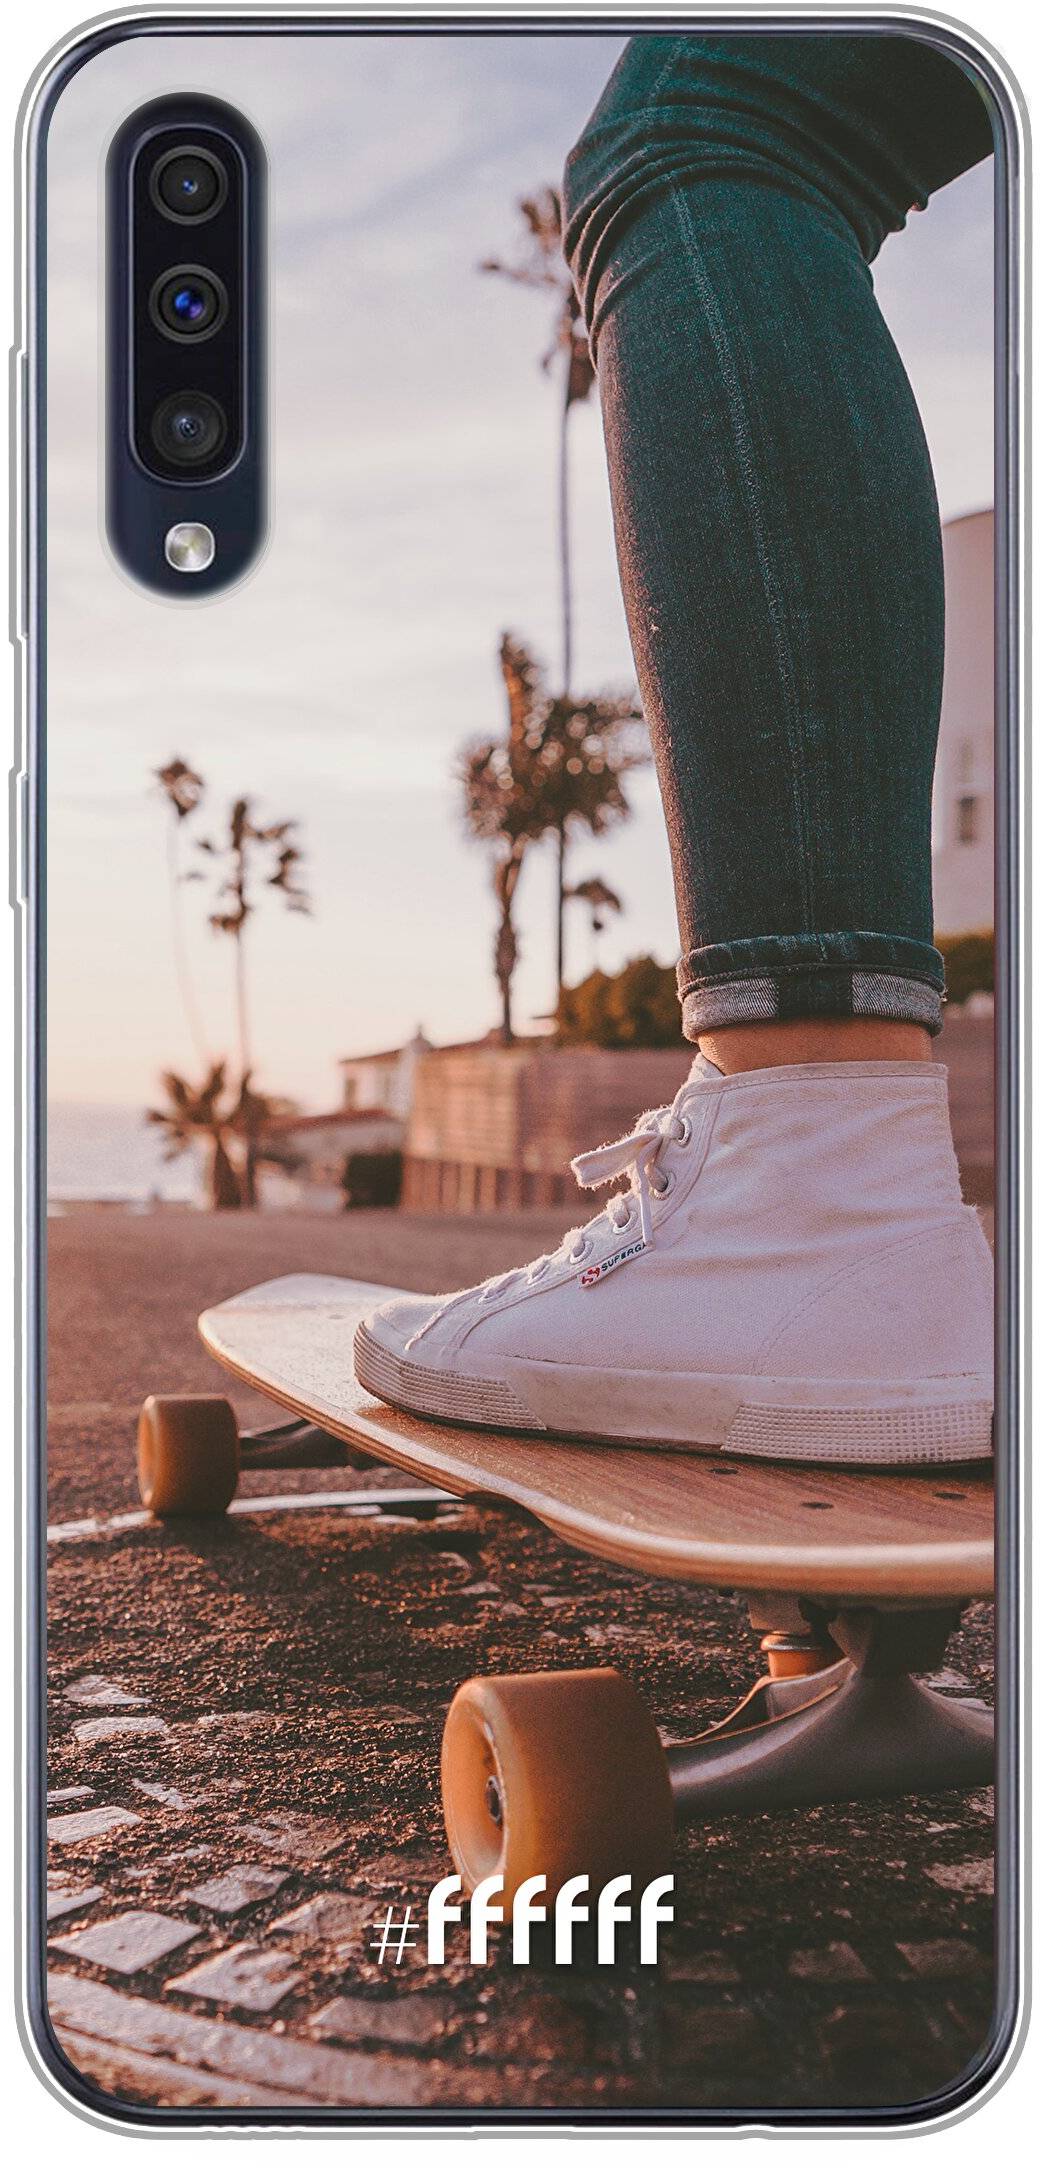 Skateboarding Galaxy A40